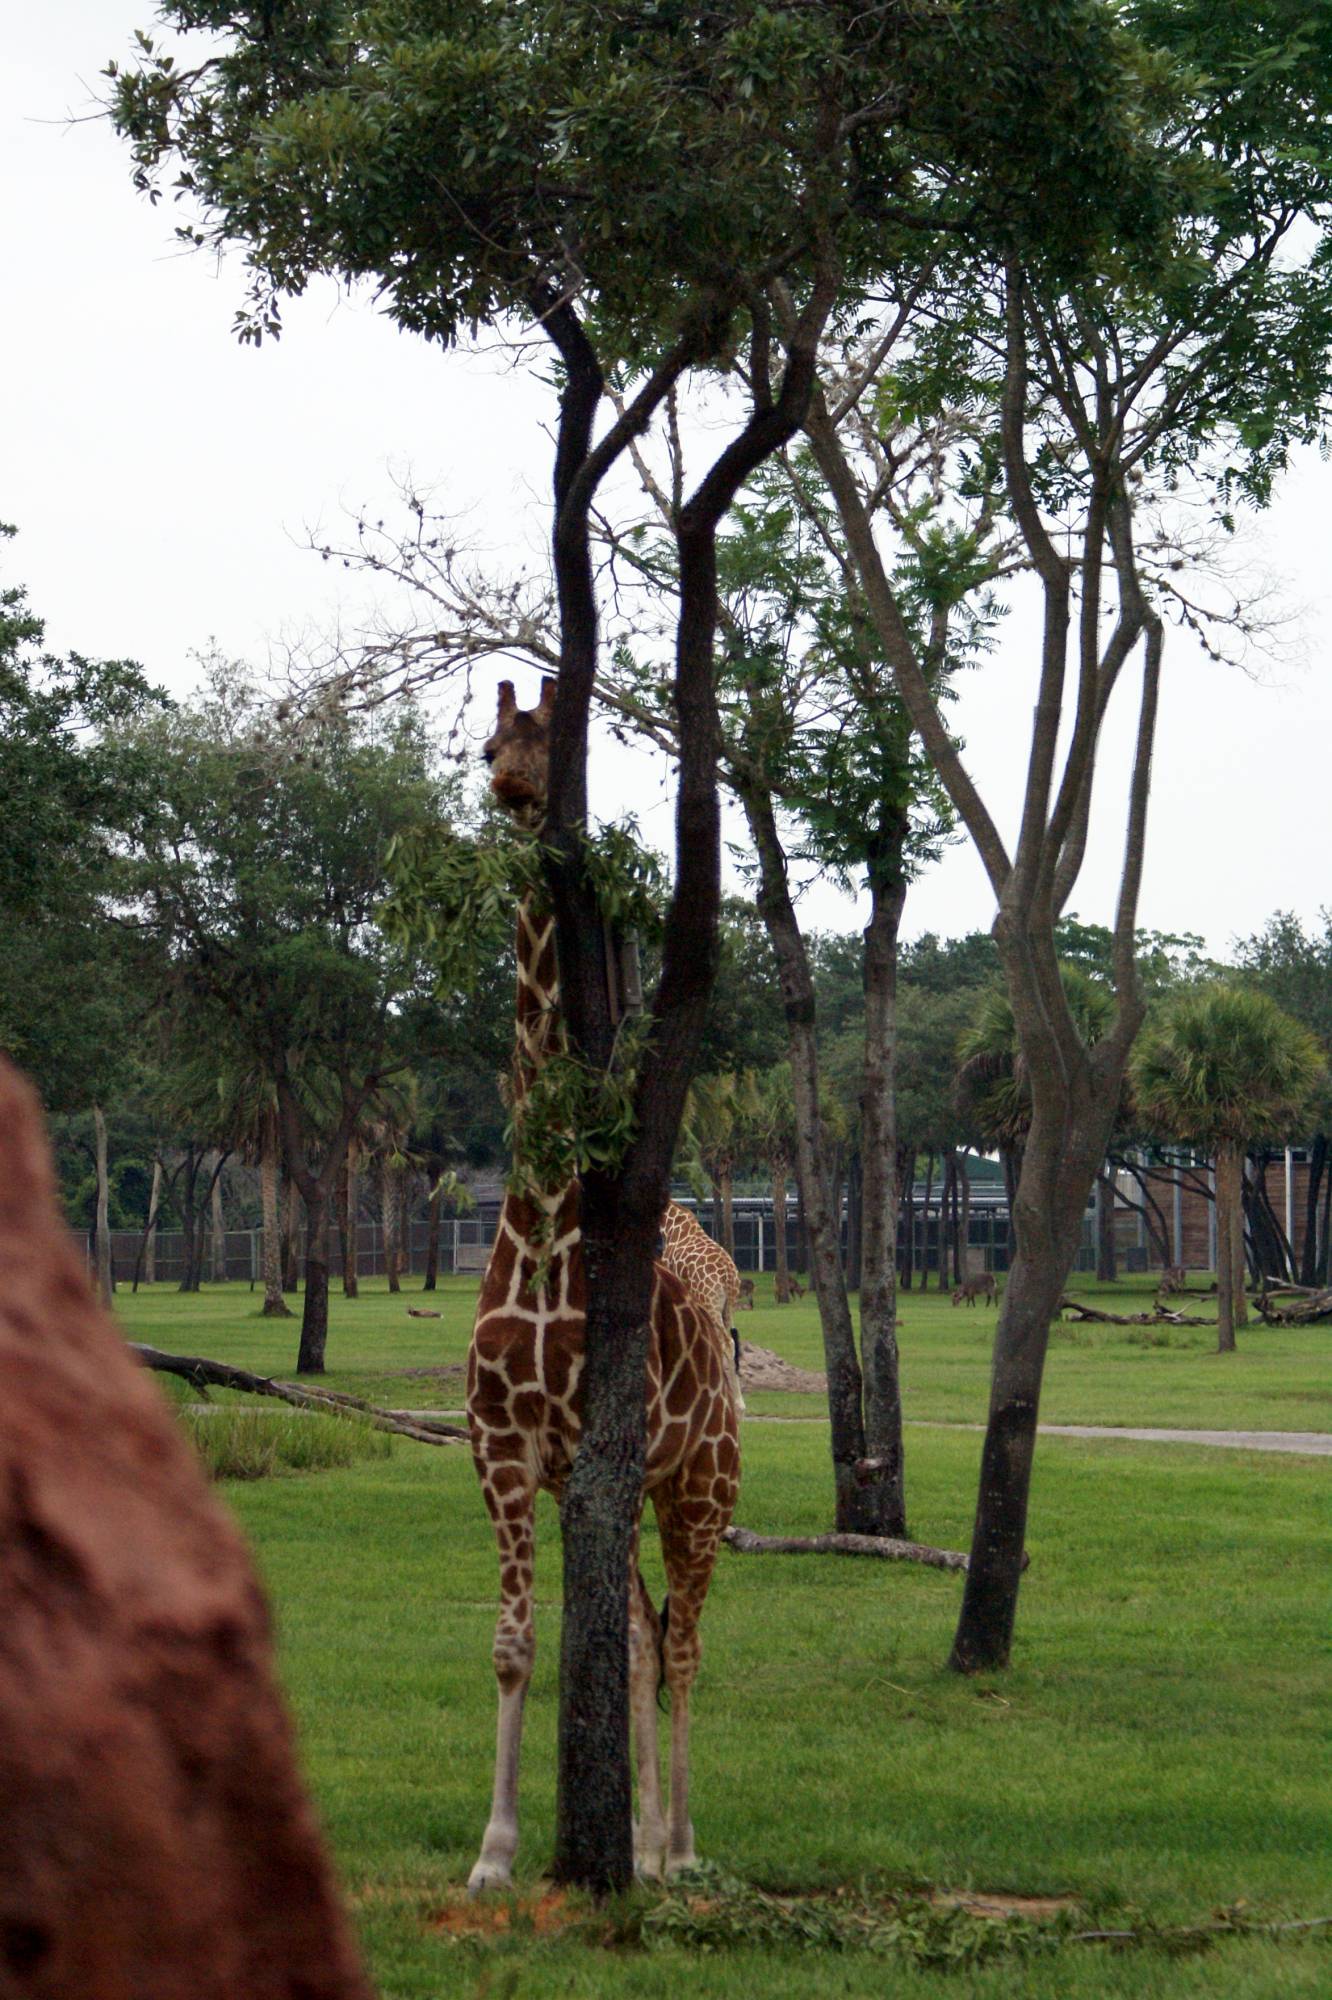 Giraffe at AKL Overlook